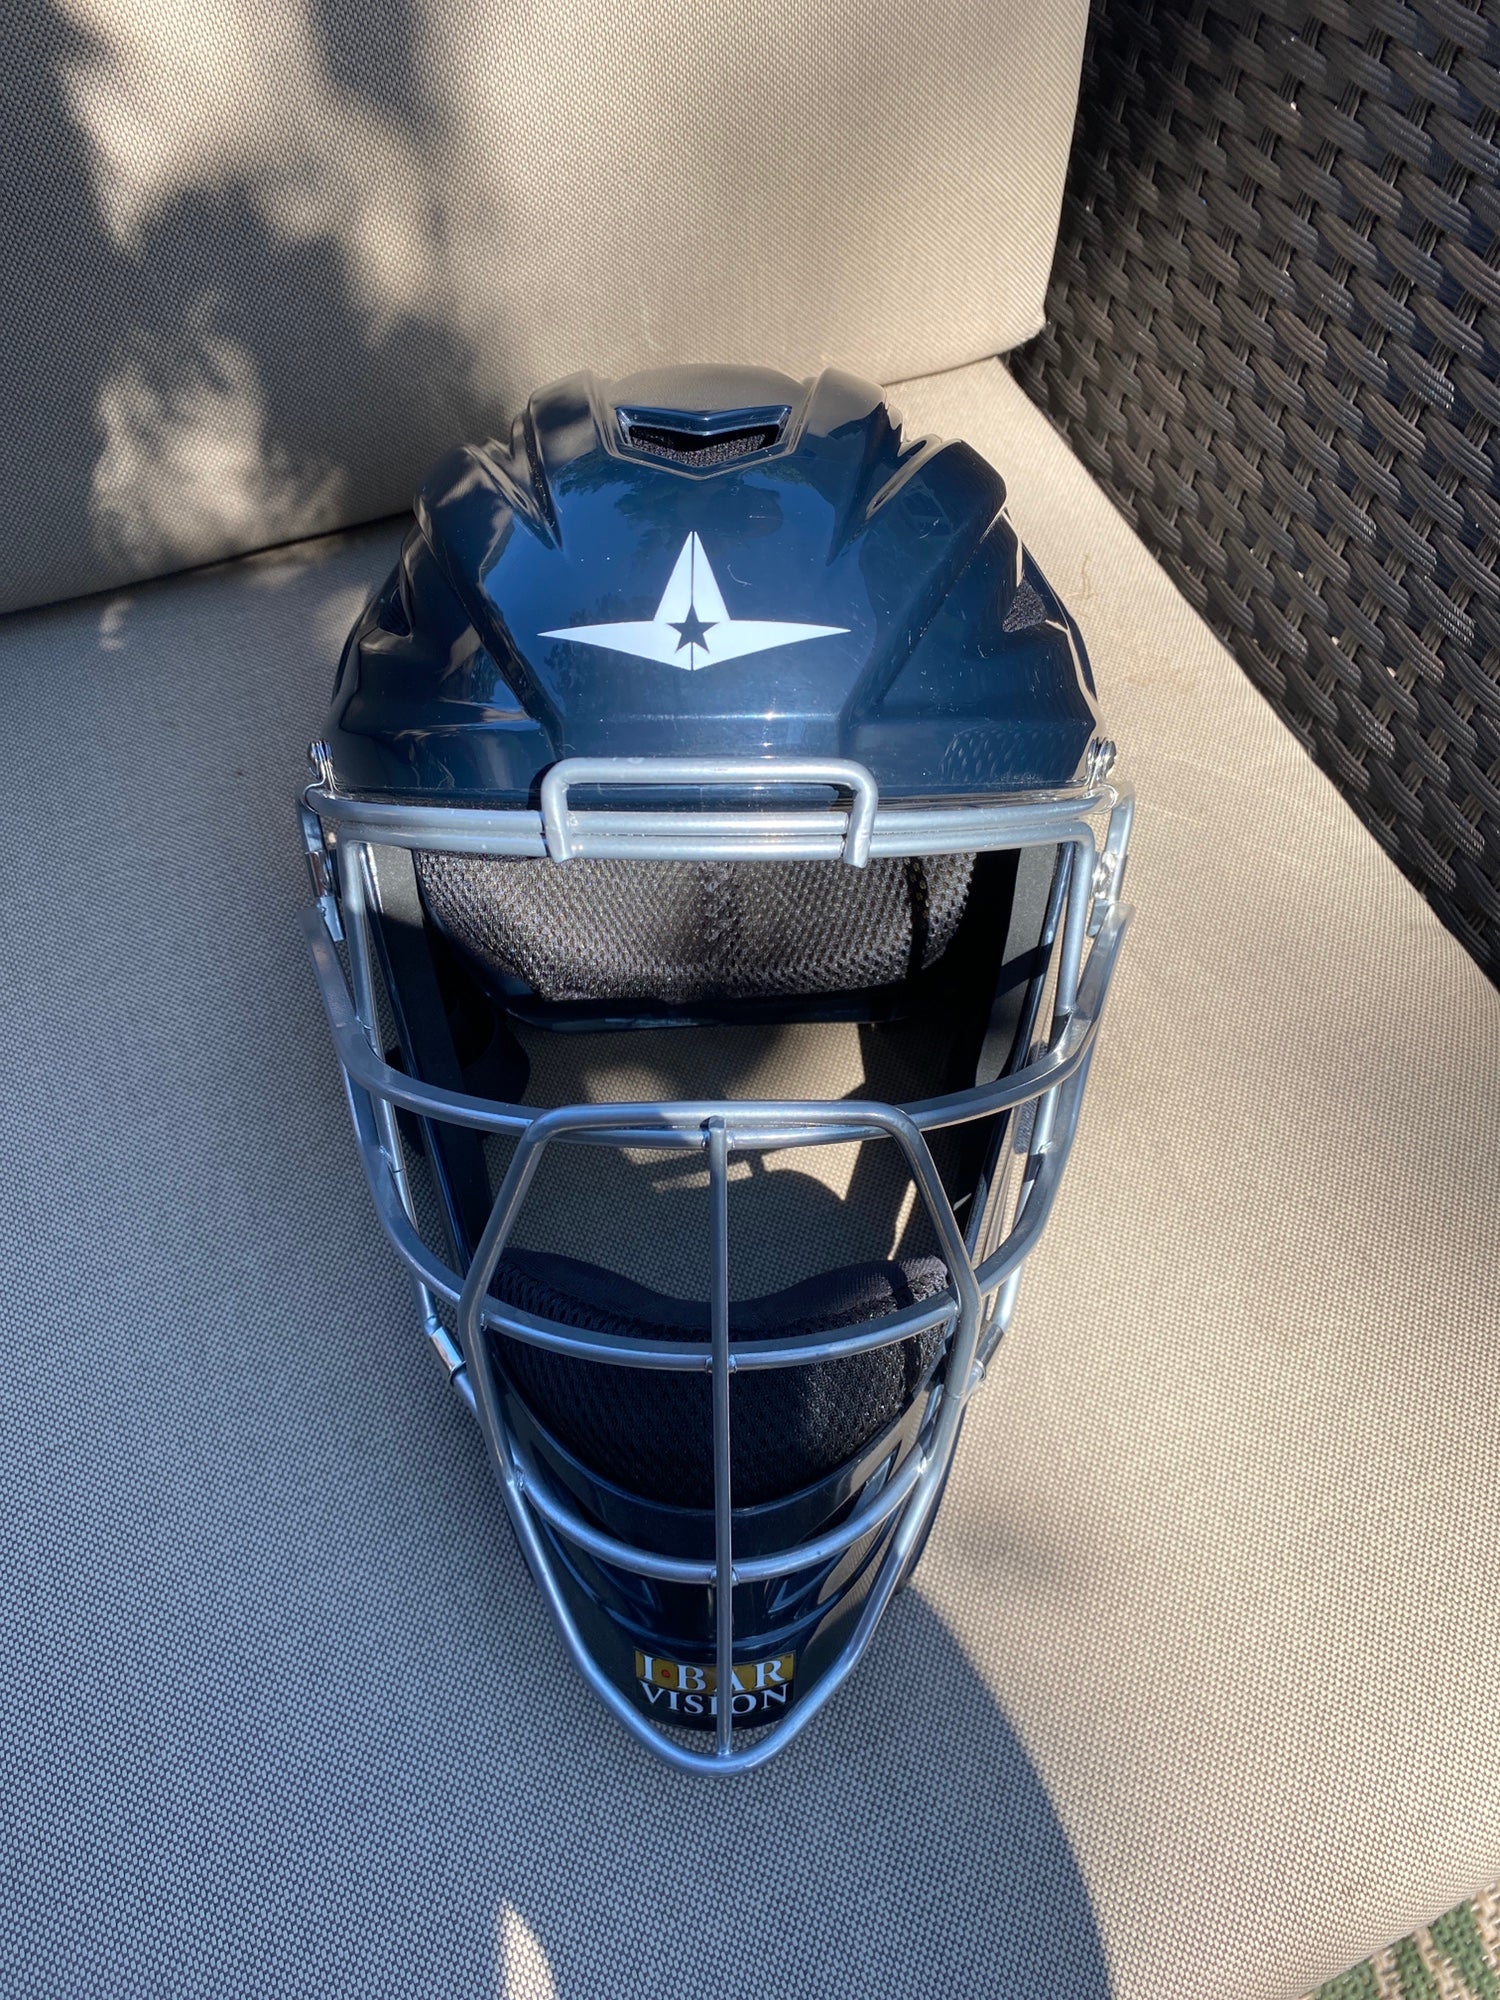 New All-Star Light Blue and Black MVP2500 Catcher's Helmet | SidelineSwap